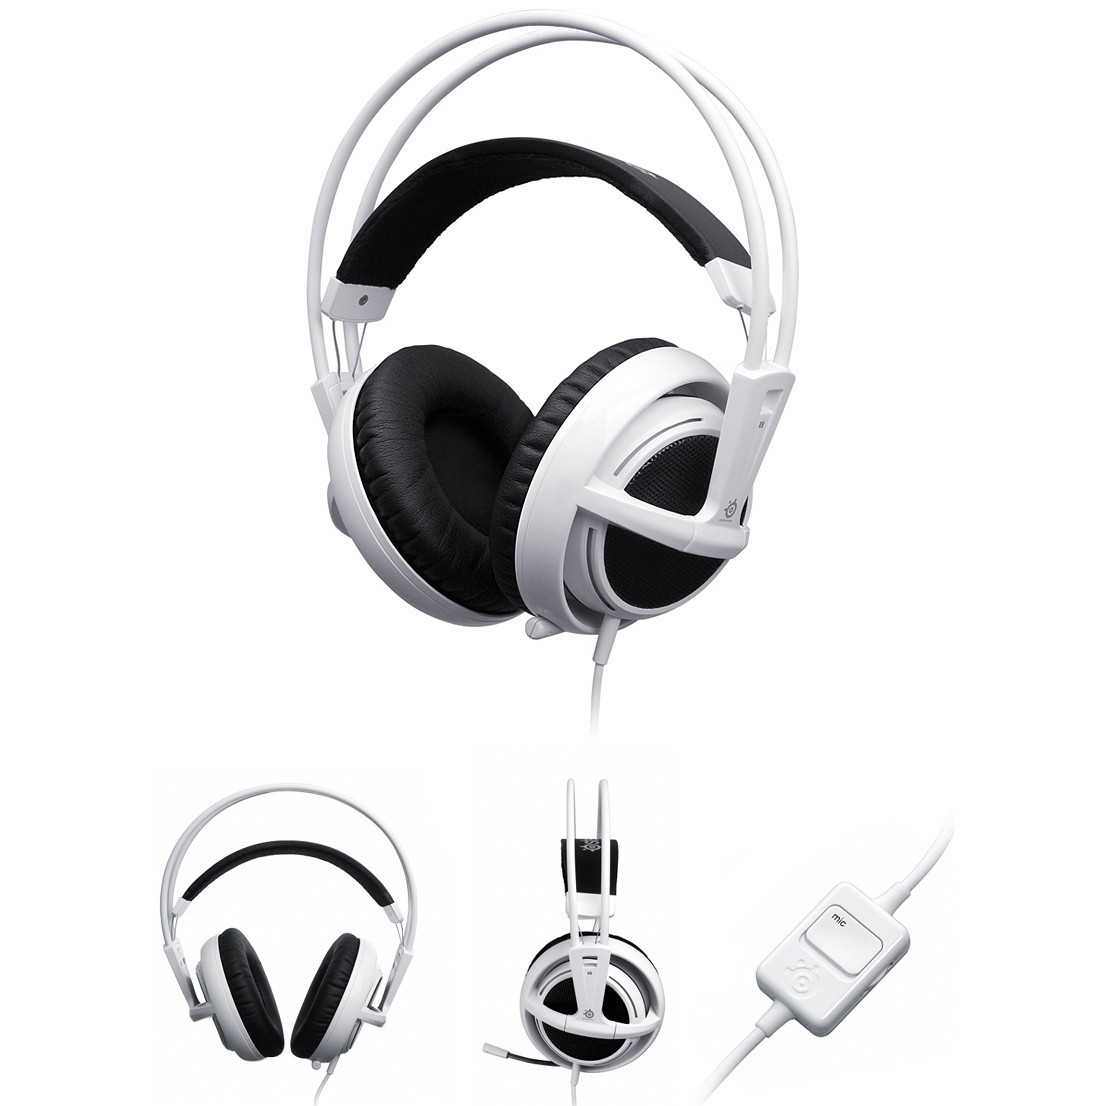 Steelseries siberia full-size headset v2 купить по акционной цене , отзывы и обзоры.